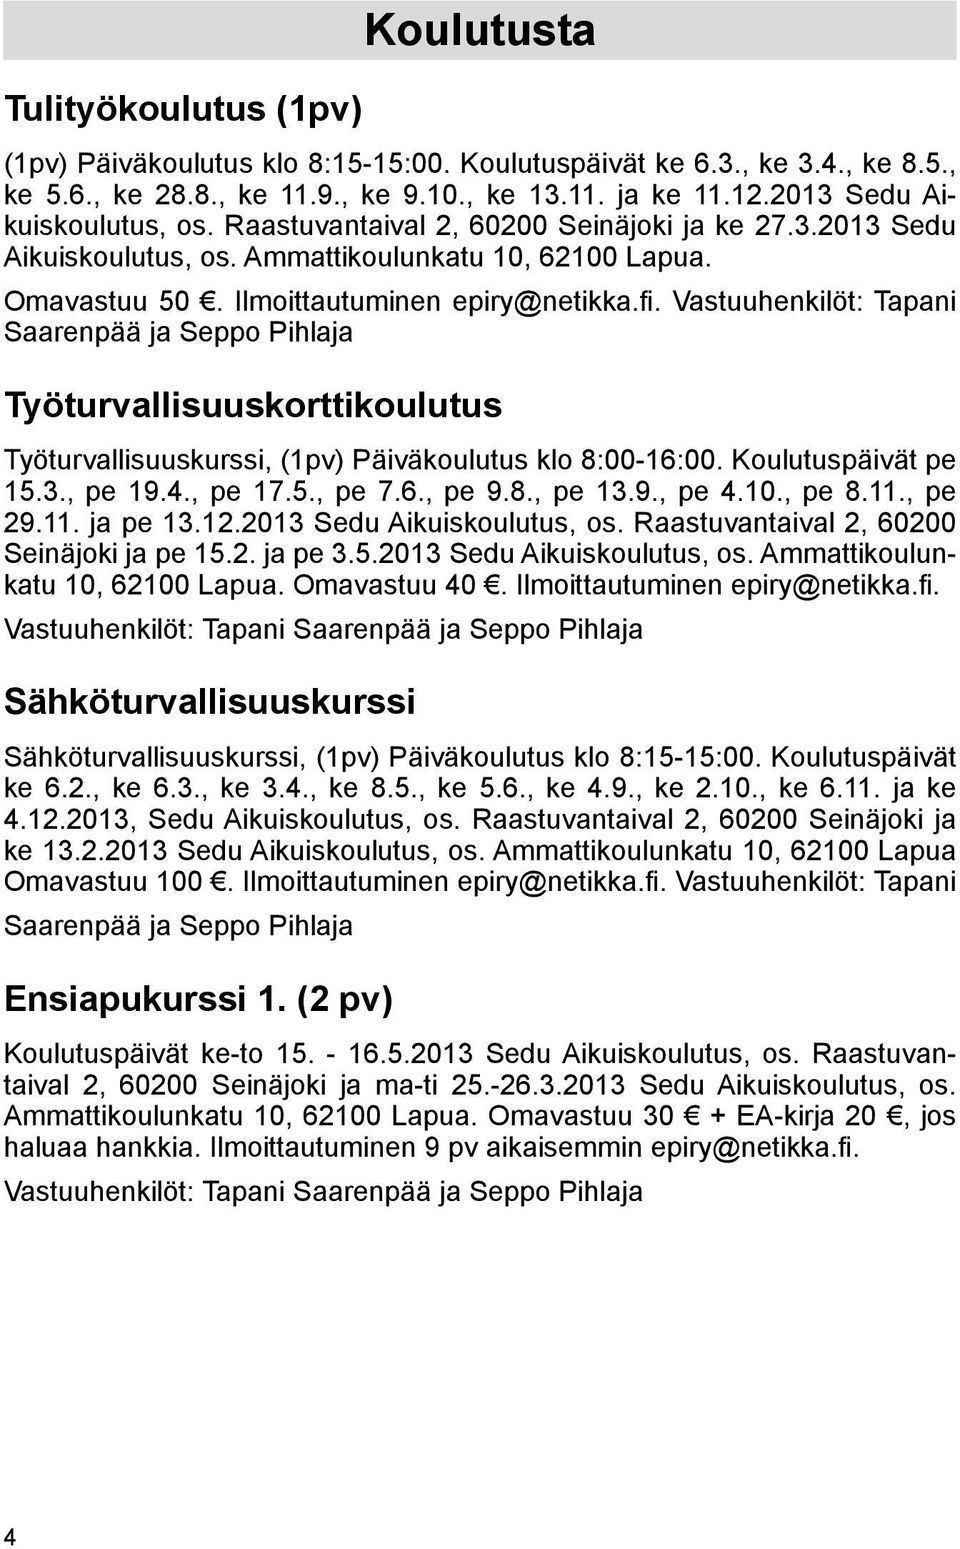 Vastuuhenkilöt: Tapani Saarenpää ja Seppo Pihlaja Työturvallisuuskorttikoulutus Työturvallisuuskurssi, (1pv) Päiväkoulutus klo 8:00-16:00. Koulutuspäivät pe 15.3., pe 19.4., pe 17.5., pe 7.6., pe 9.8., pe 13.